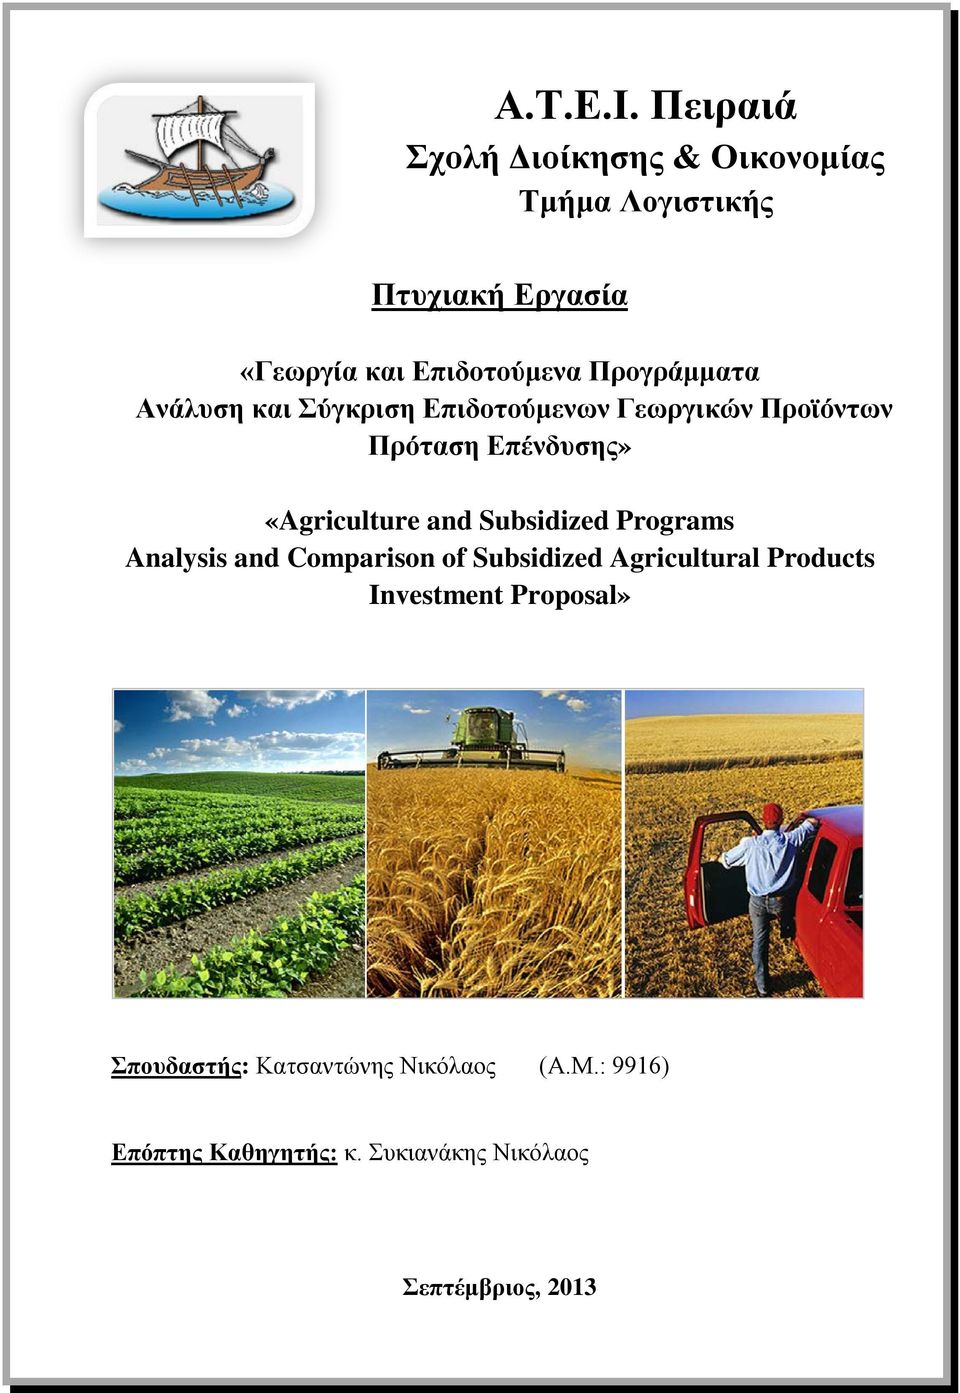 Προγράμματα Ανάλυση και Σύγκριση Επιδοτούμενων Γεωργικών Προϊόντων Πρόταση Επένδυσης» «Agriculture and